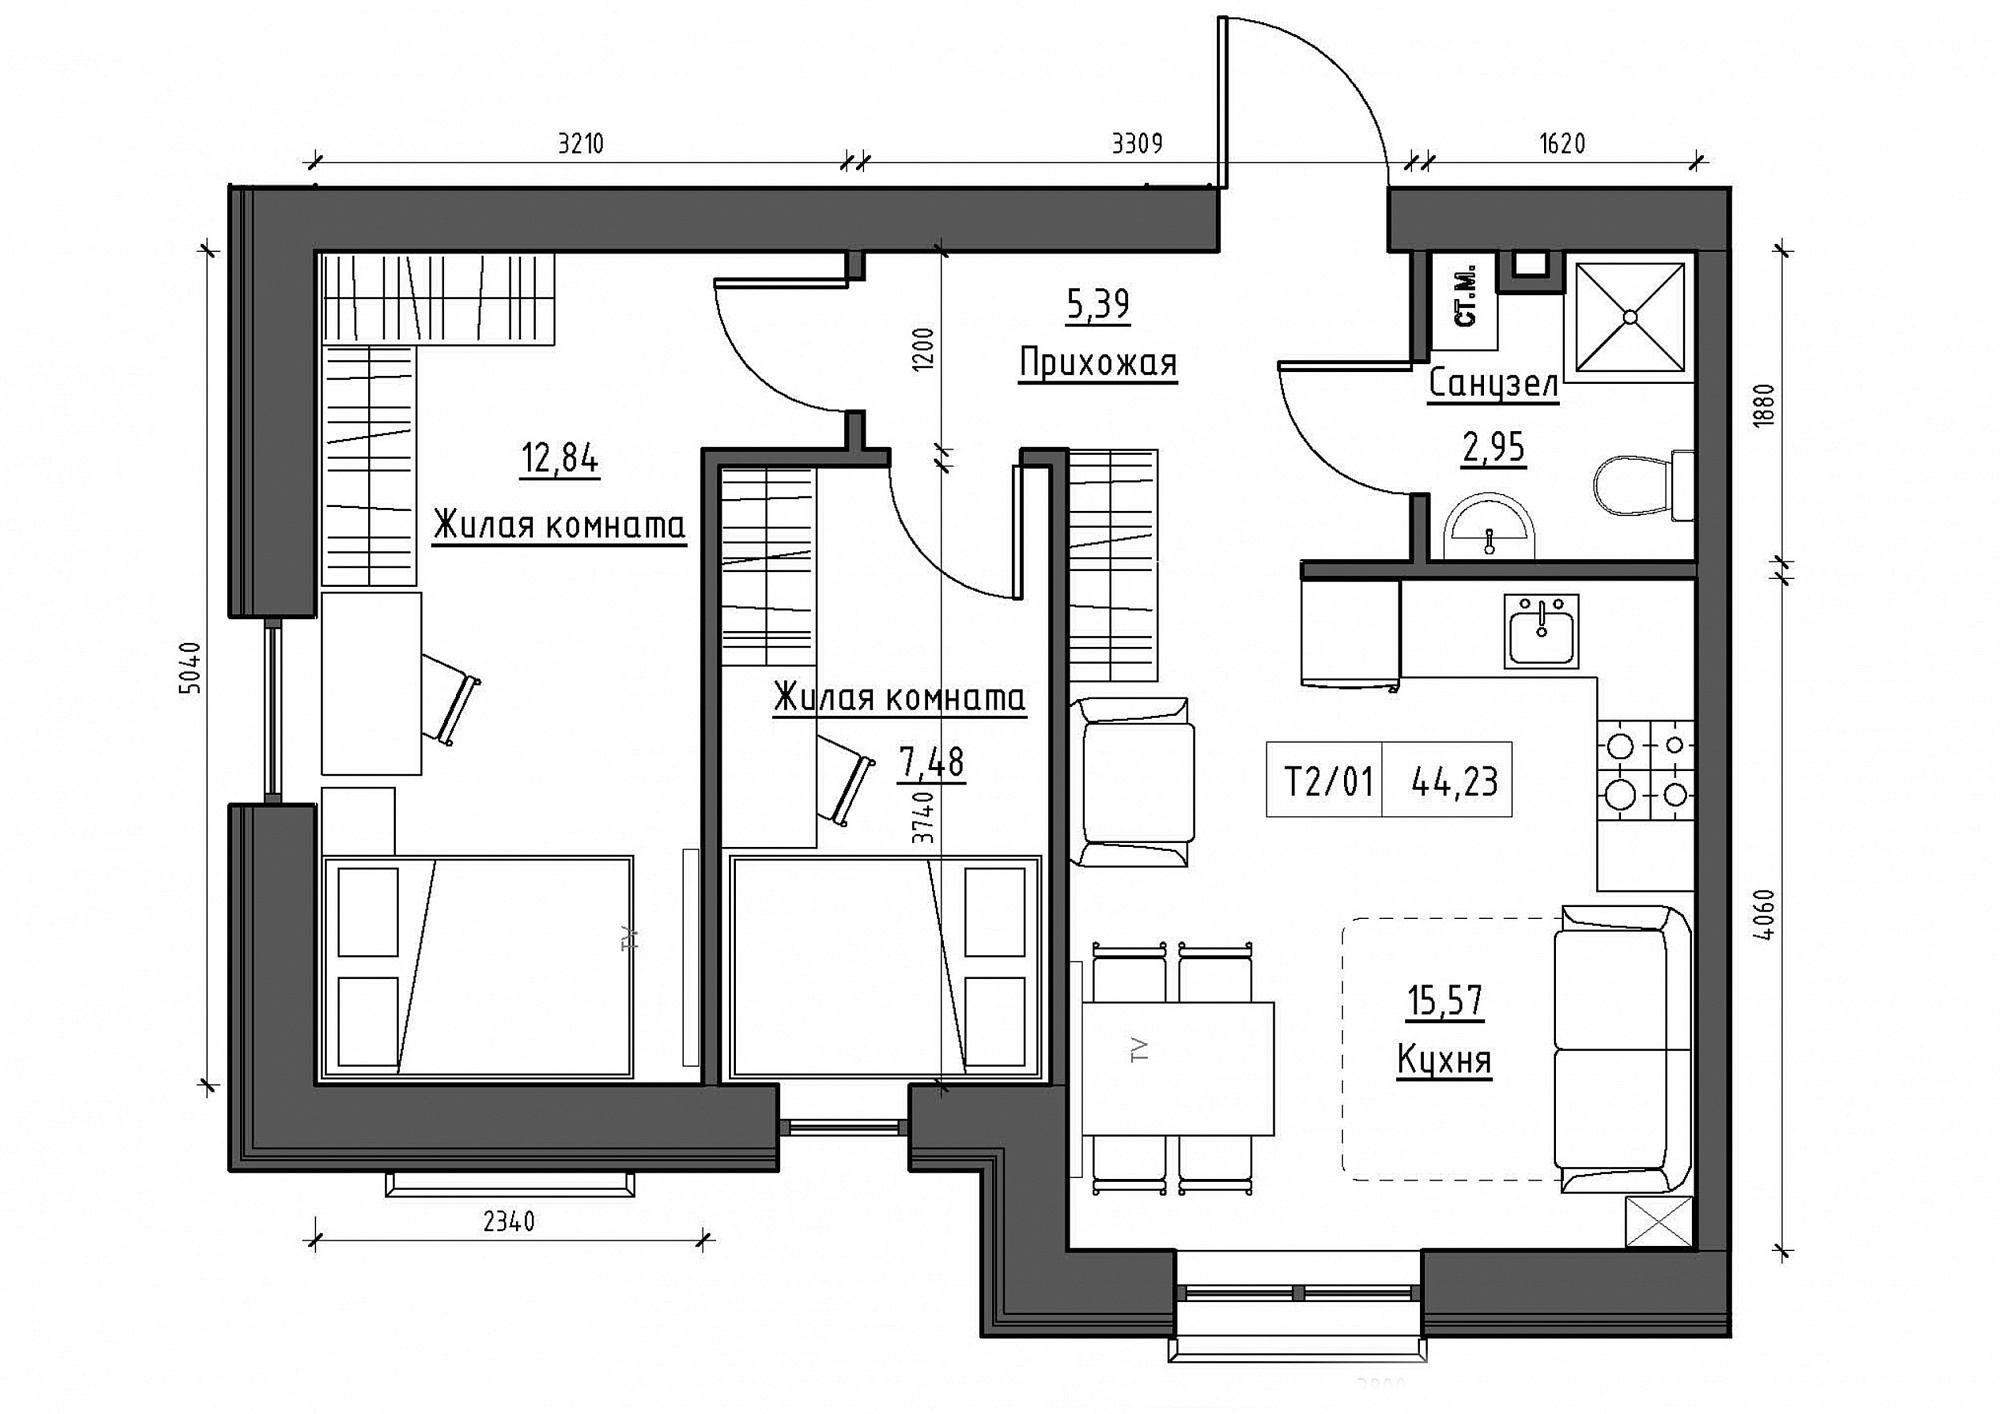 Планировка 2-к квартира площей 44.23м2, KS-012-01/0008.